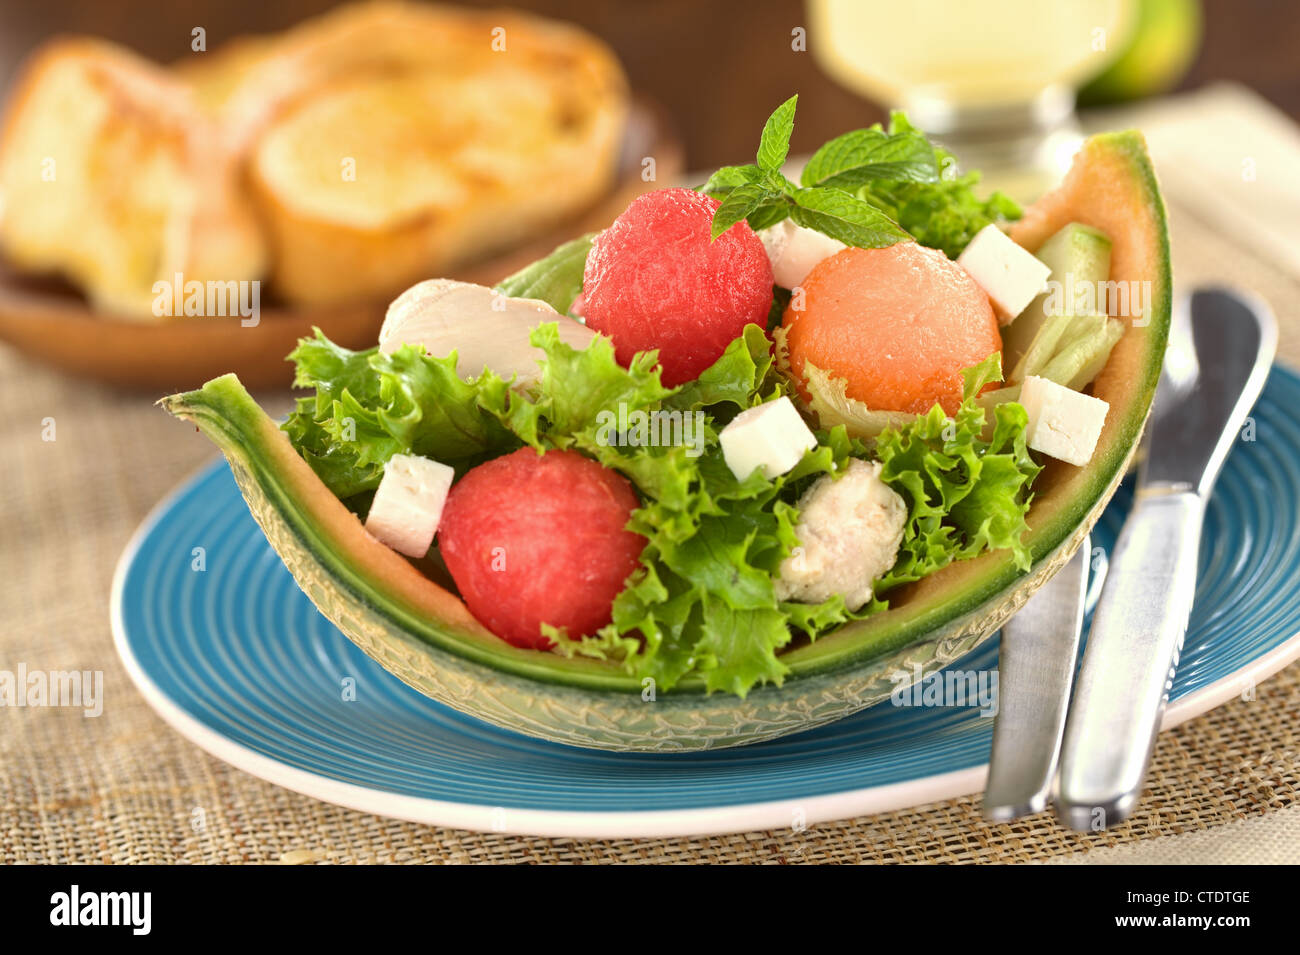 Frischer Salat aus Wassermelone, Melone Melone, Huhn, Gurken, Käse und Salat Stockfoto